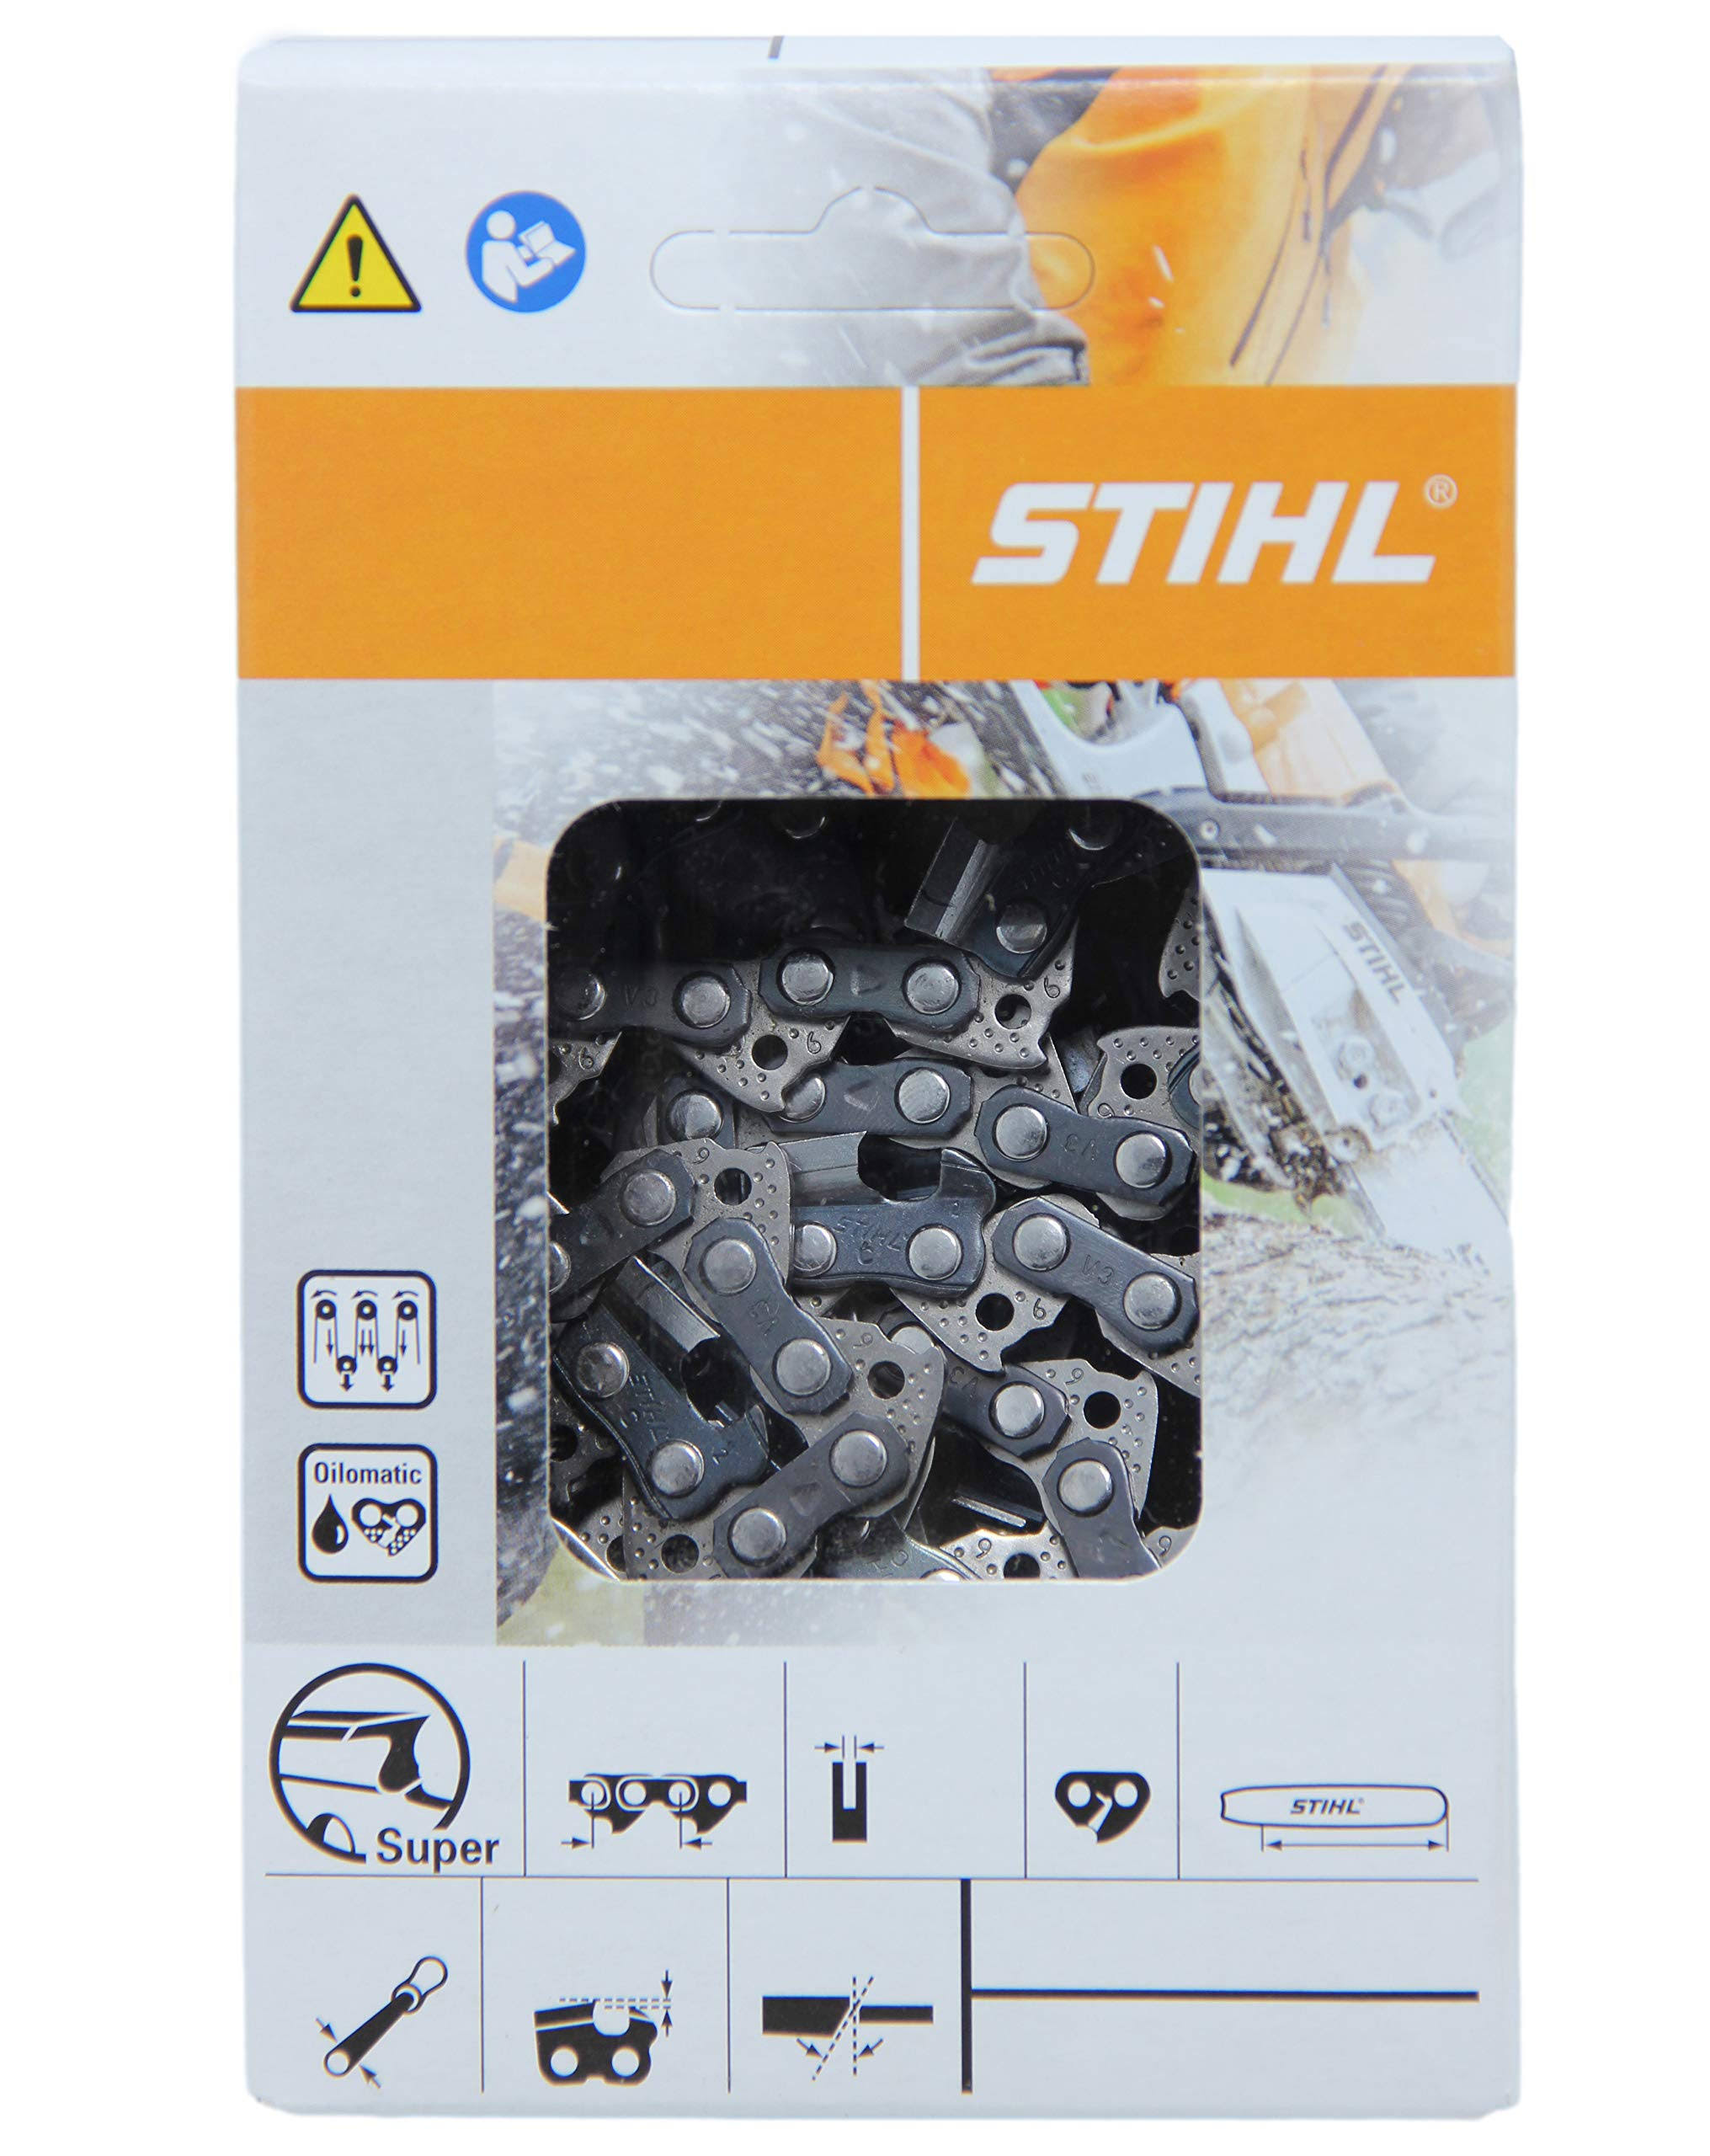 STIHL Oilomatic 71PM3-64 30cm Saw Chain 3670-005-0064